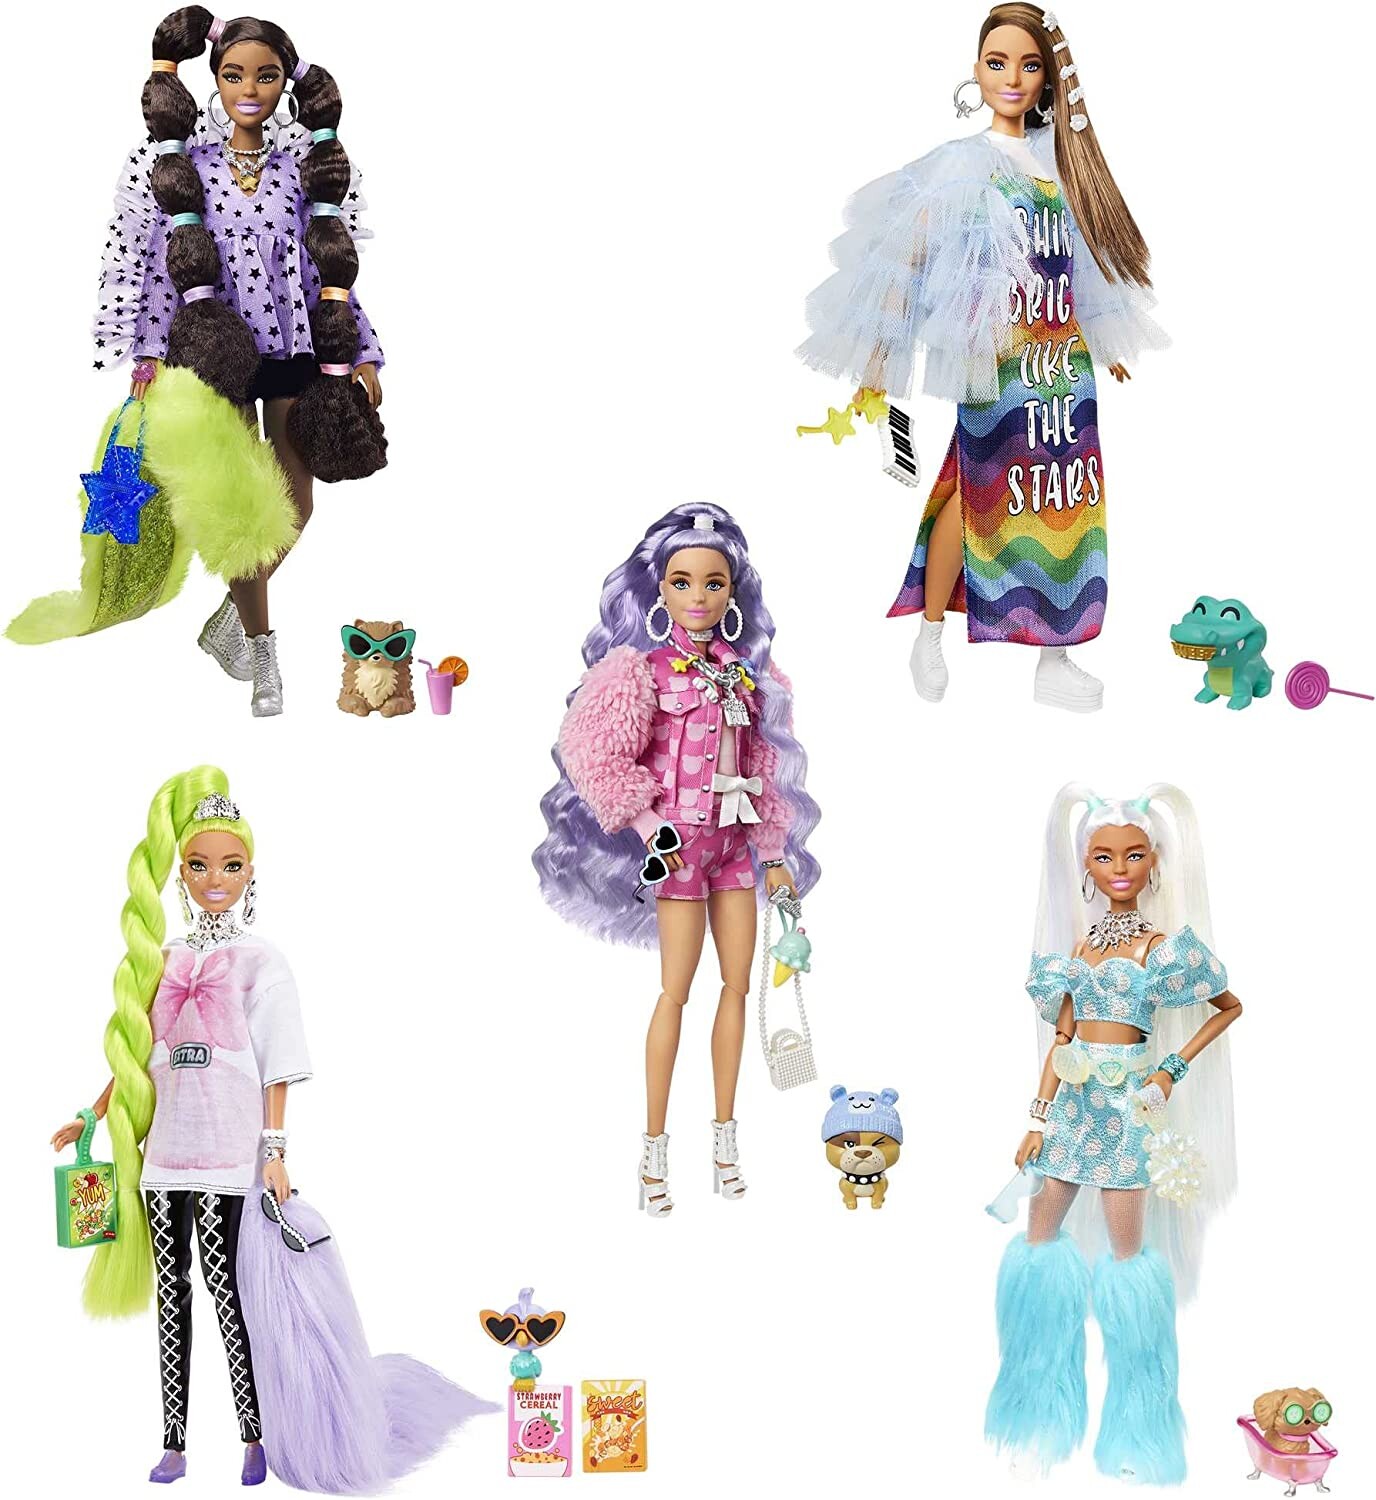 Coffret 5 poupées Barbie Extra, Barbie